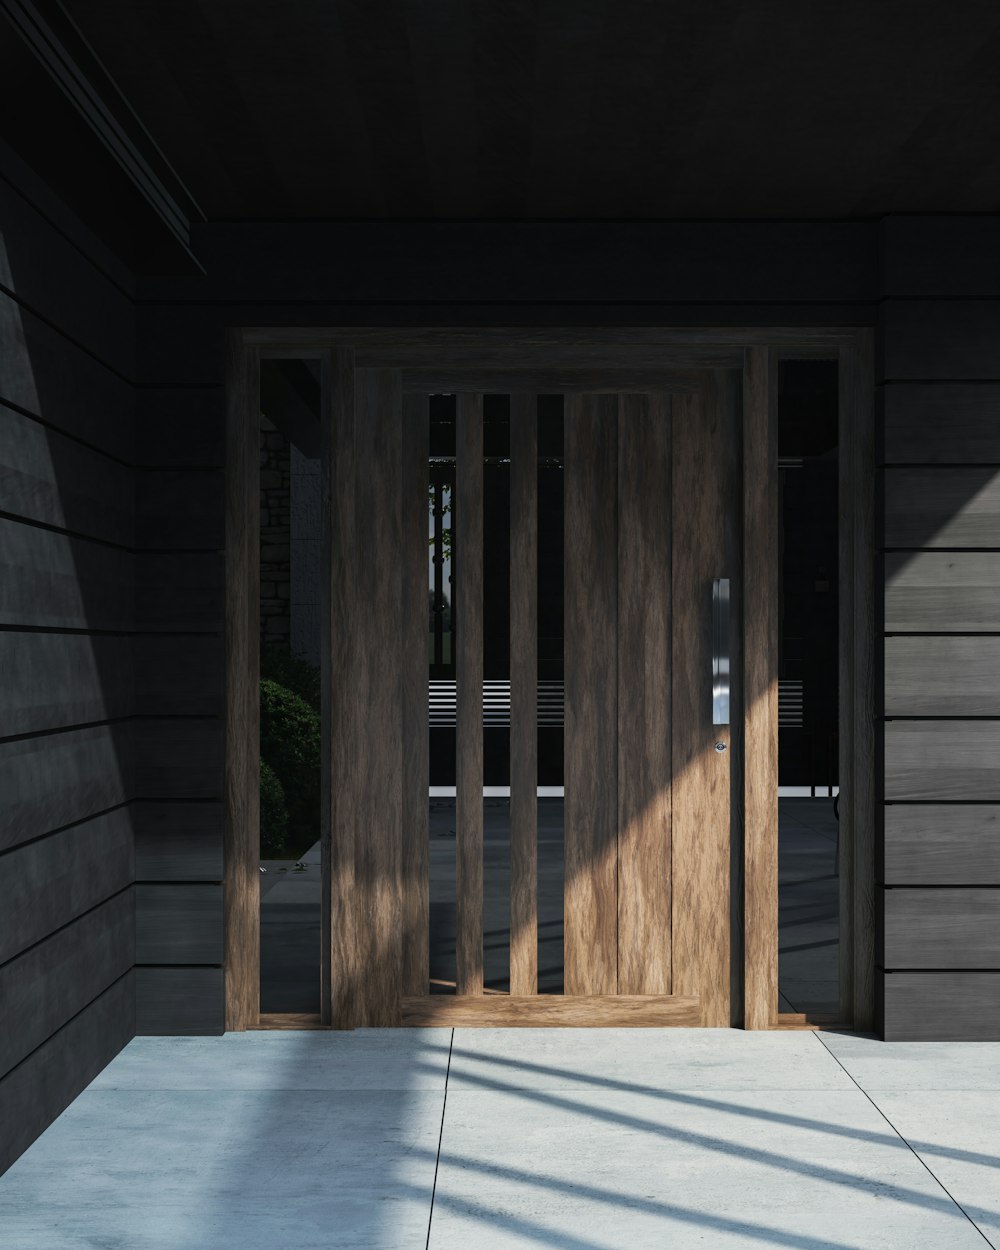 a wooden doorway in a building